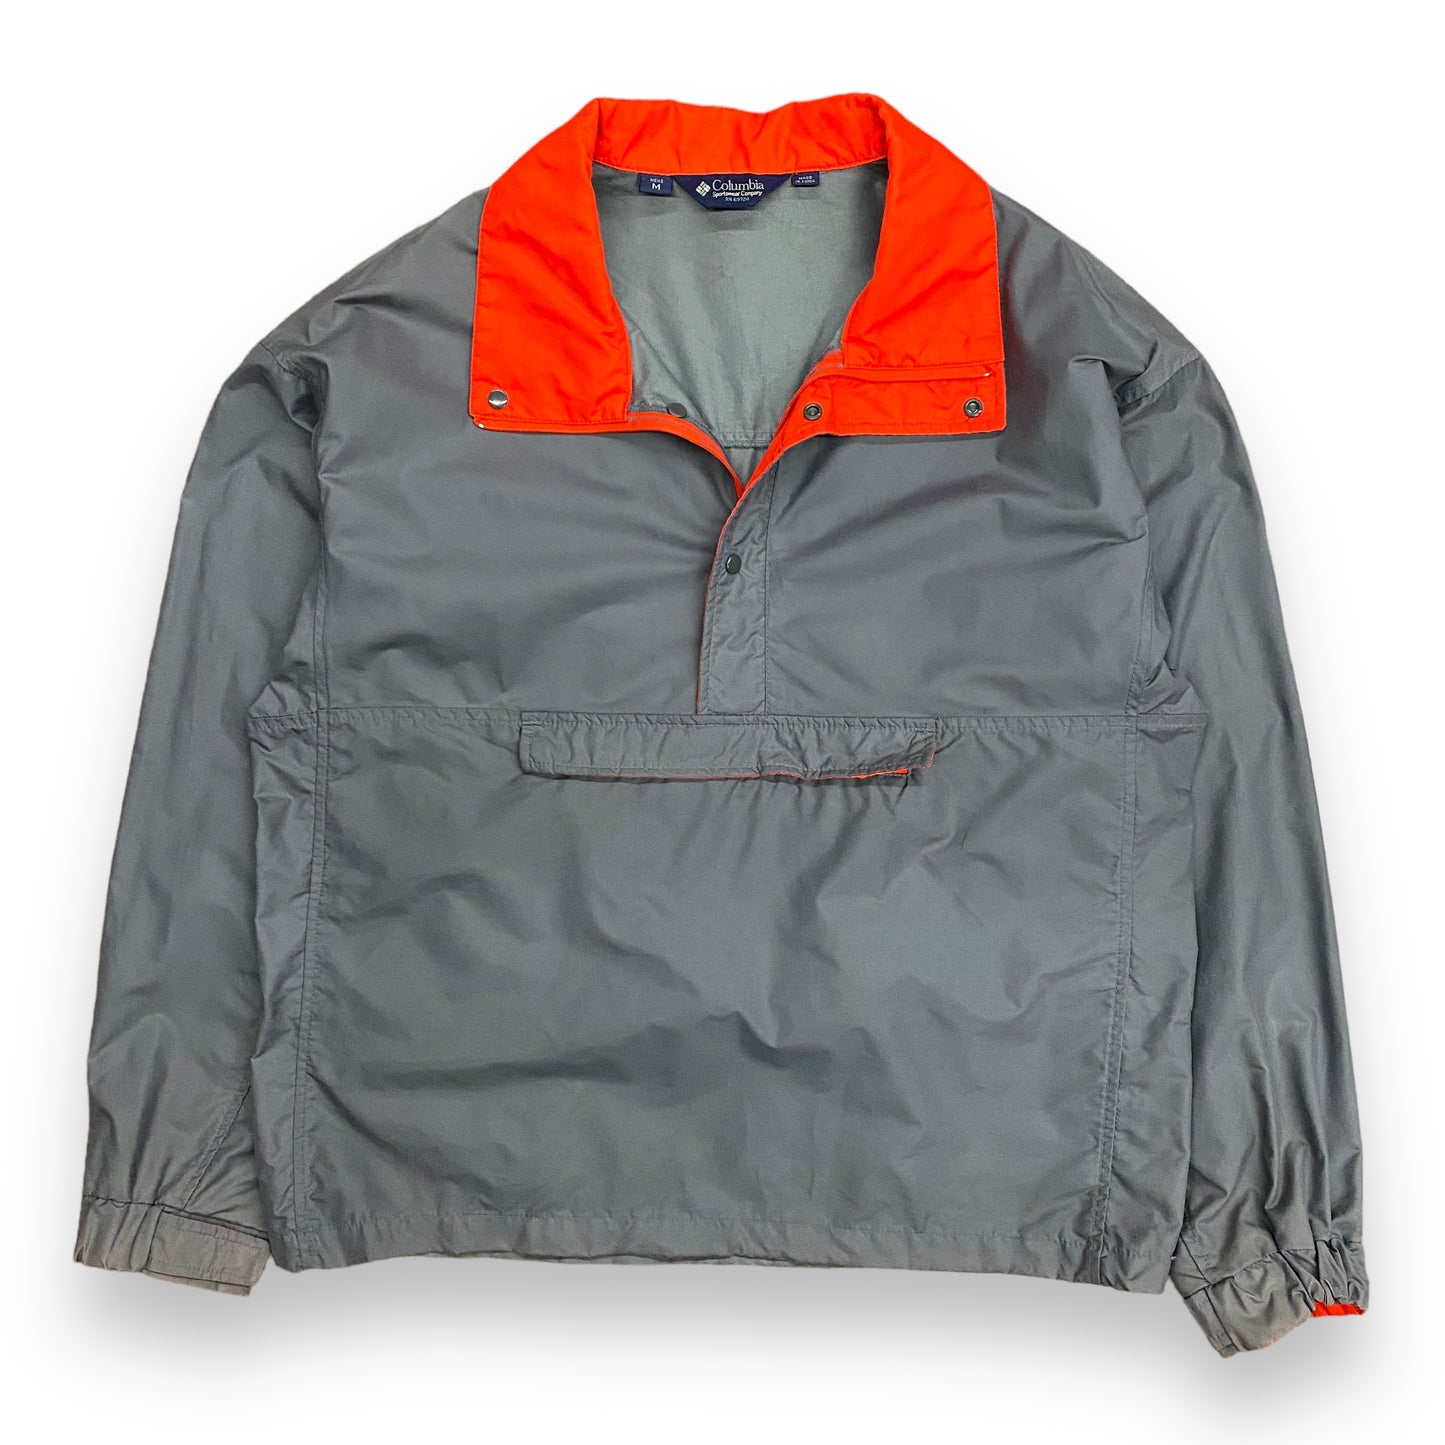 1980s Columbia Sportswear Gray & Red Packable Windbreaker - Size Medium